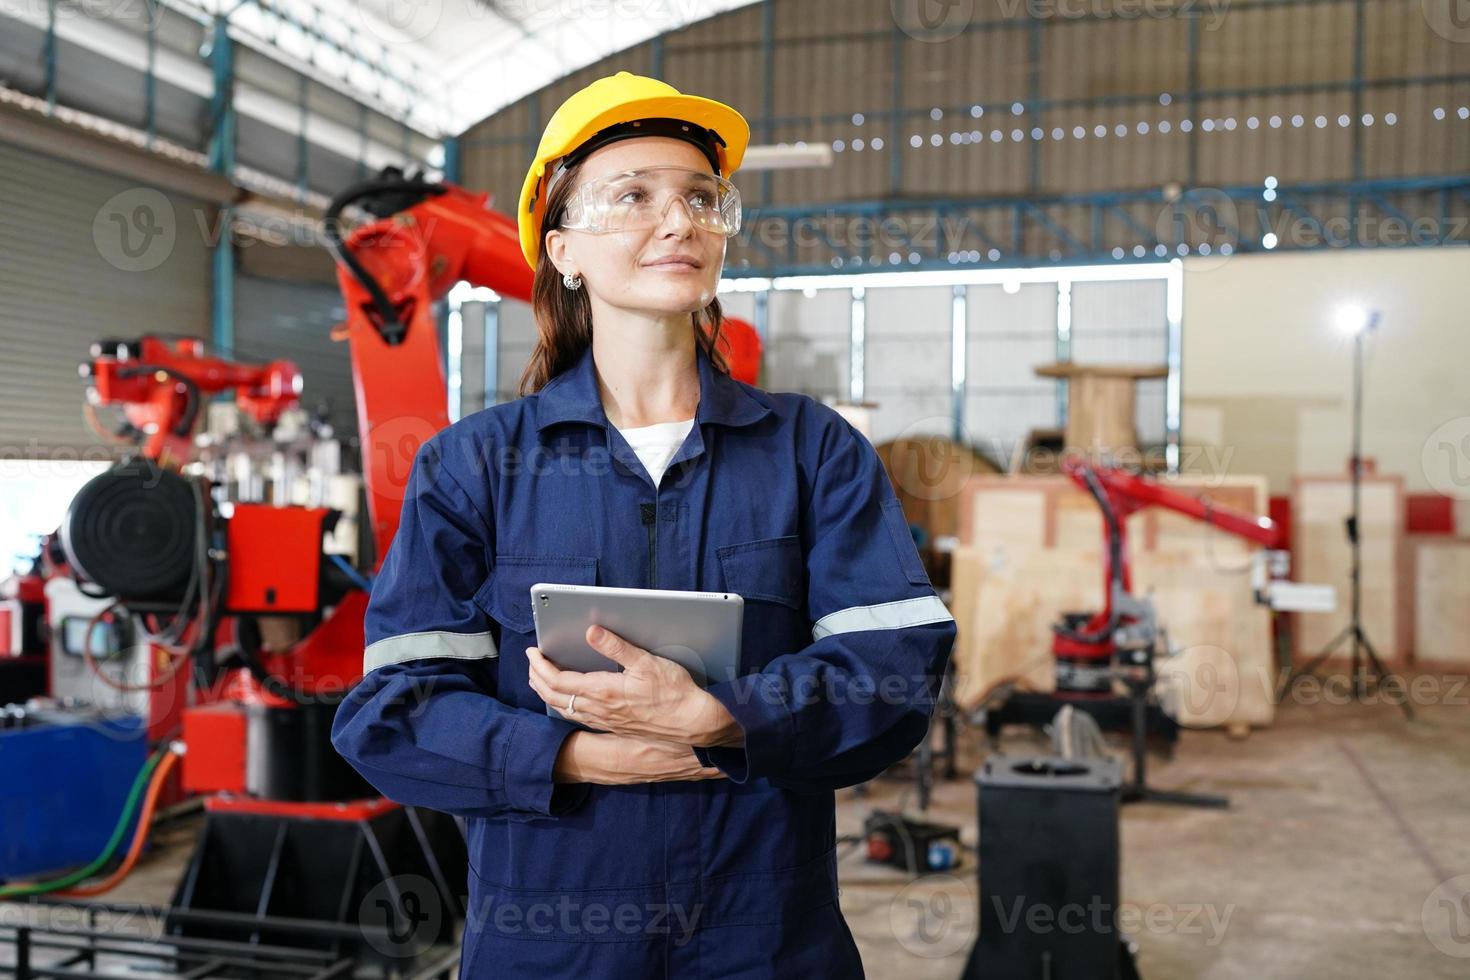 vrouwelijke empowerment, werkende vrouwelijke industriearbeider of ingenieurvrouw die in een industriële productiefabriek werkt. foto